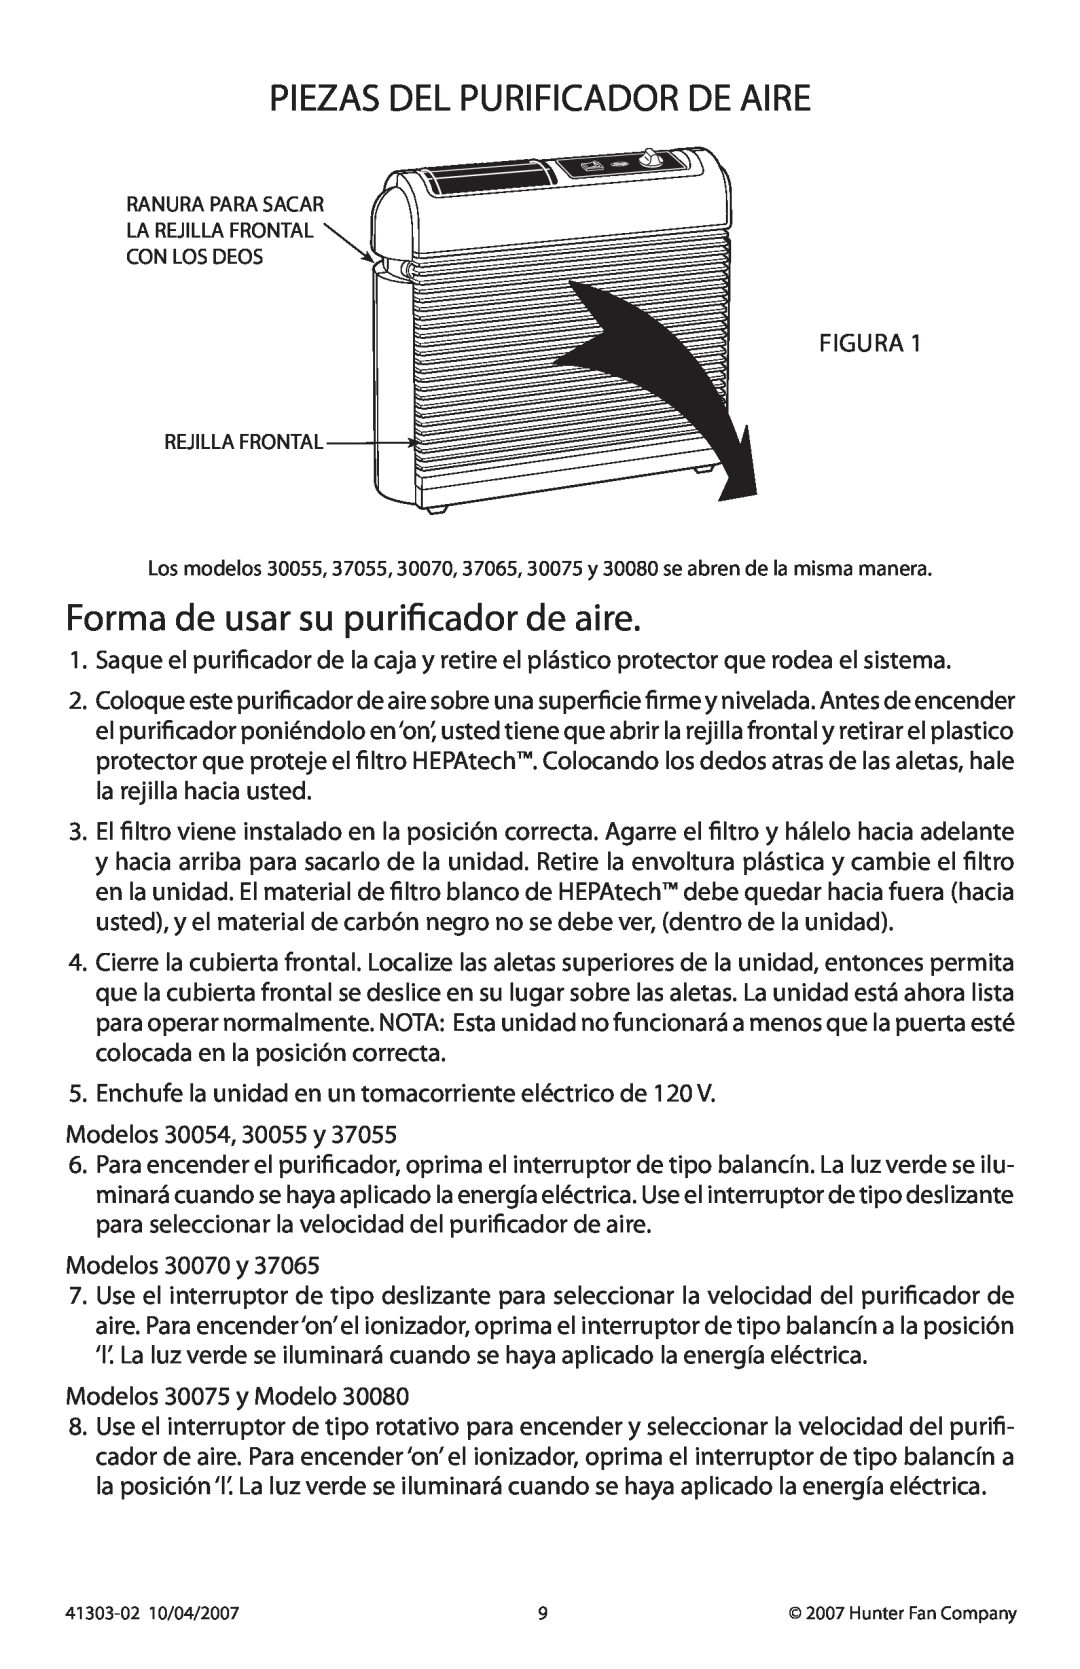 Hunter Fan 30075, 37065, 37055, 30080, 30070, 30054 manual Piezas Del Purificador De Aire, Forma de usar su purificador de aire 